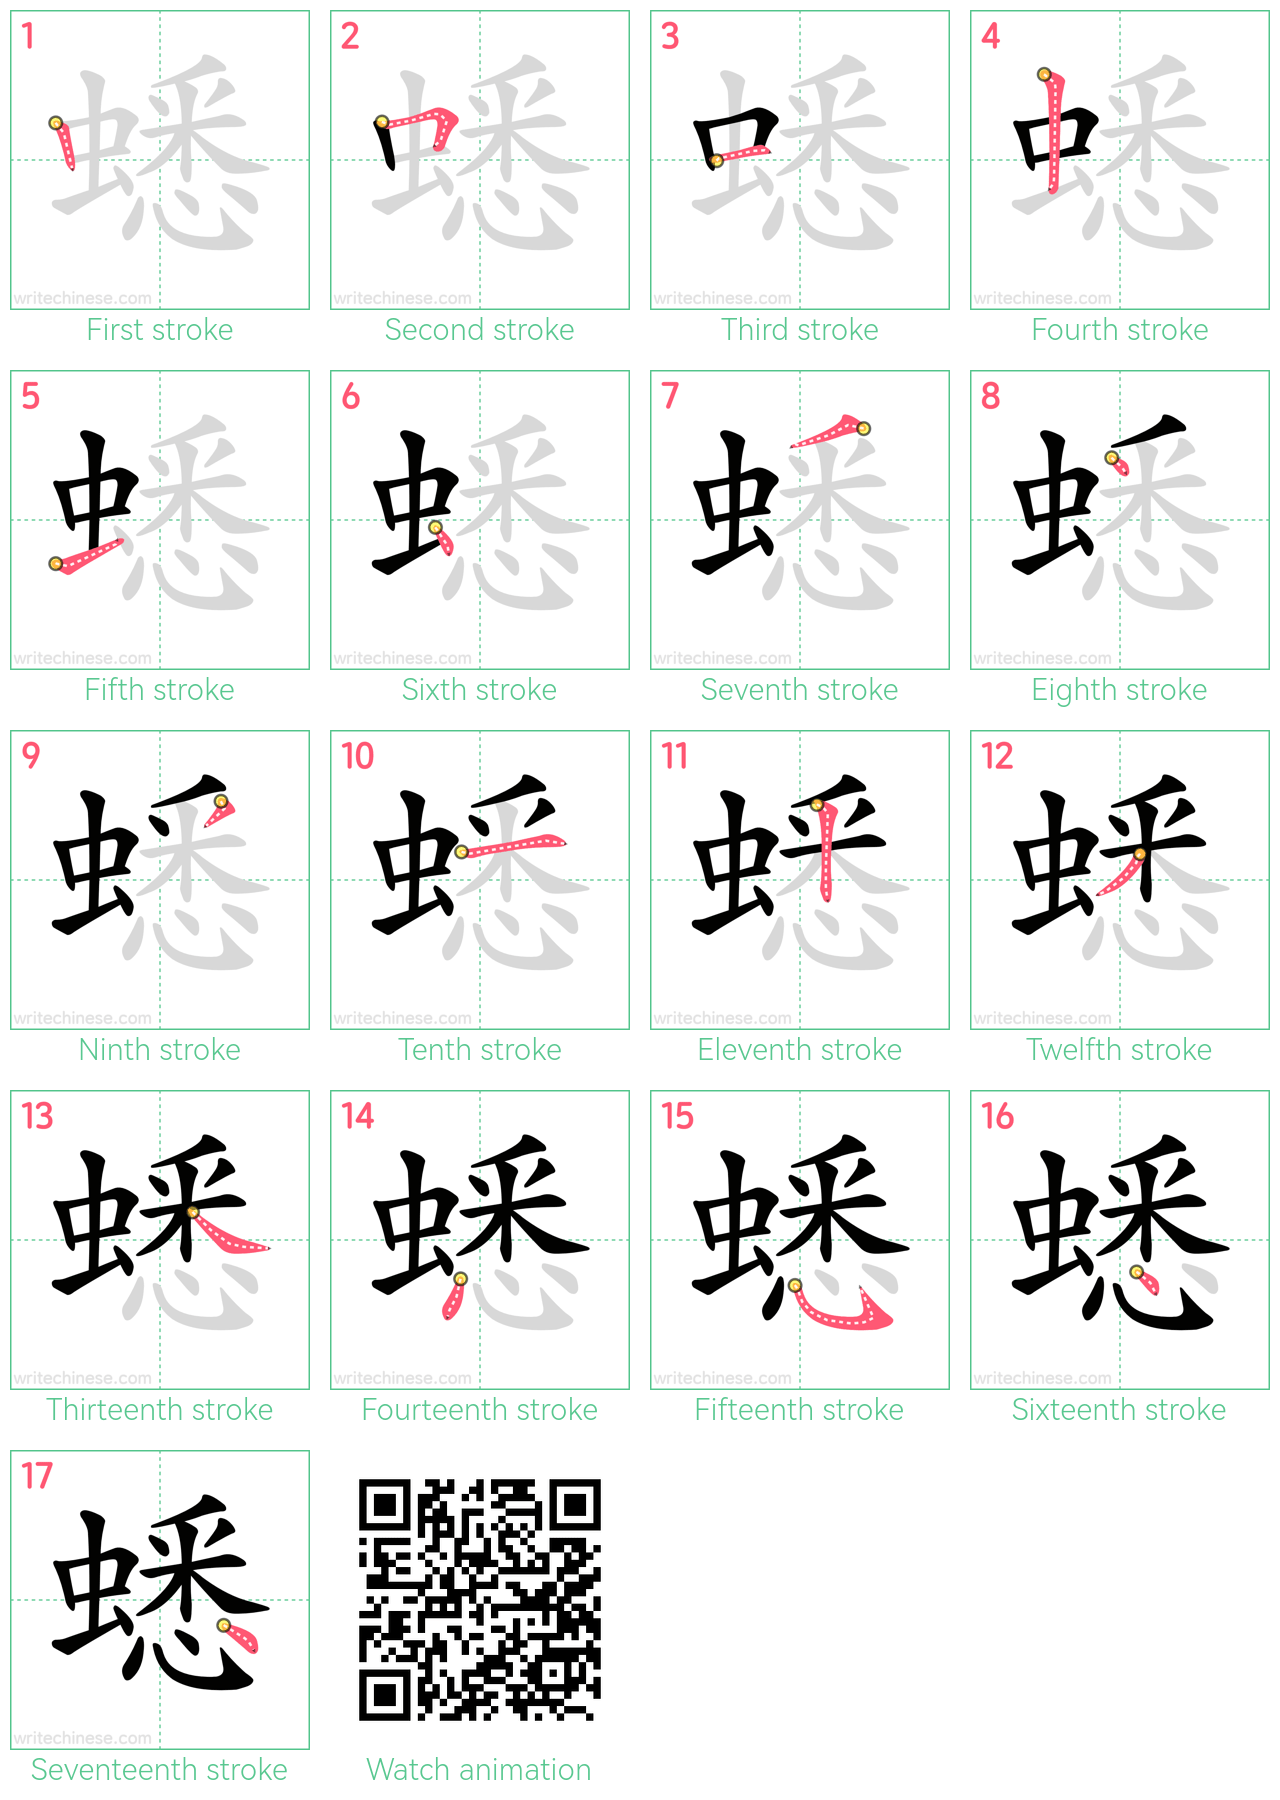 蟋 step-by-step stroke order diagrams